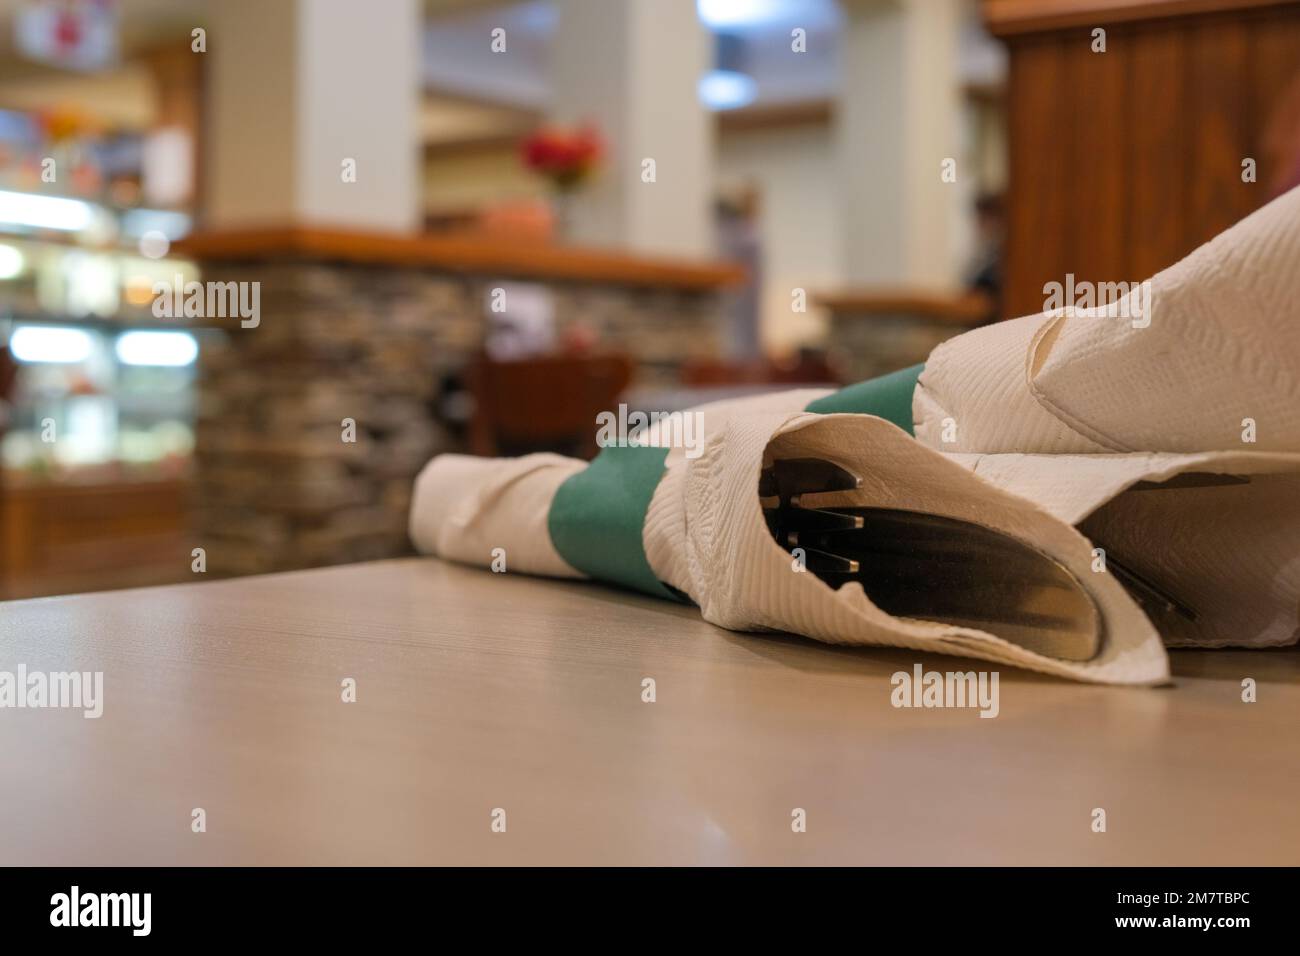 All'interno di un ristorante, le posate si trovano avvolte in un tovagliolo di carta su un tavolo. Gli utensili sono visti da vicino, con la cena sfocata sullo sfondo. Foto Stock